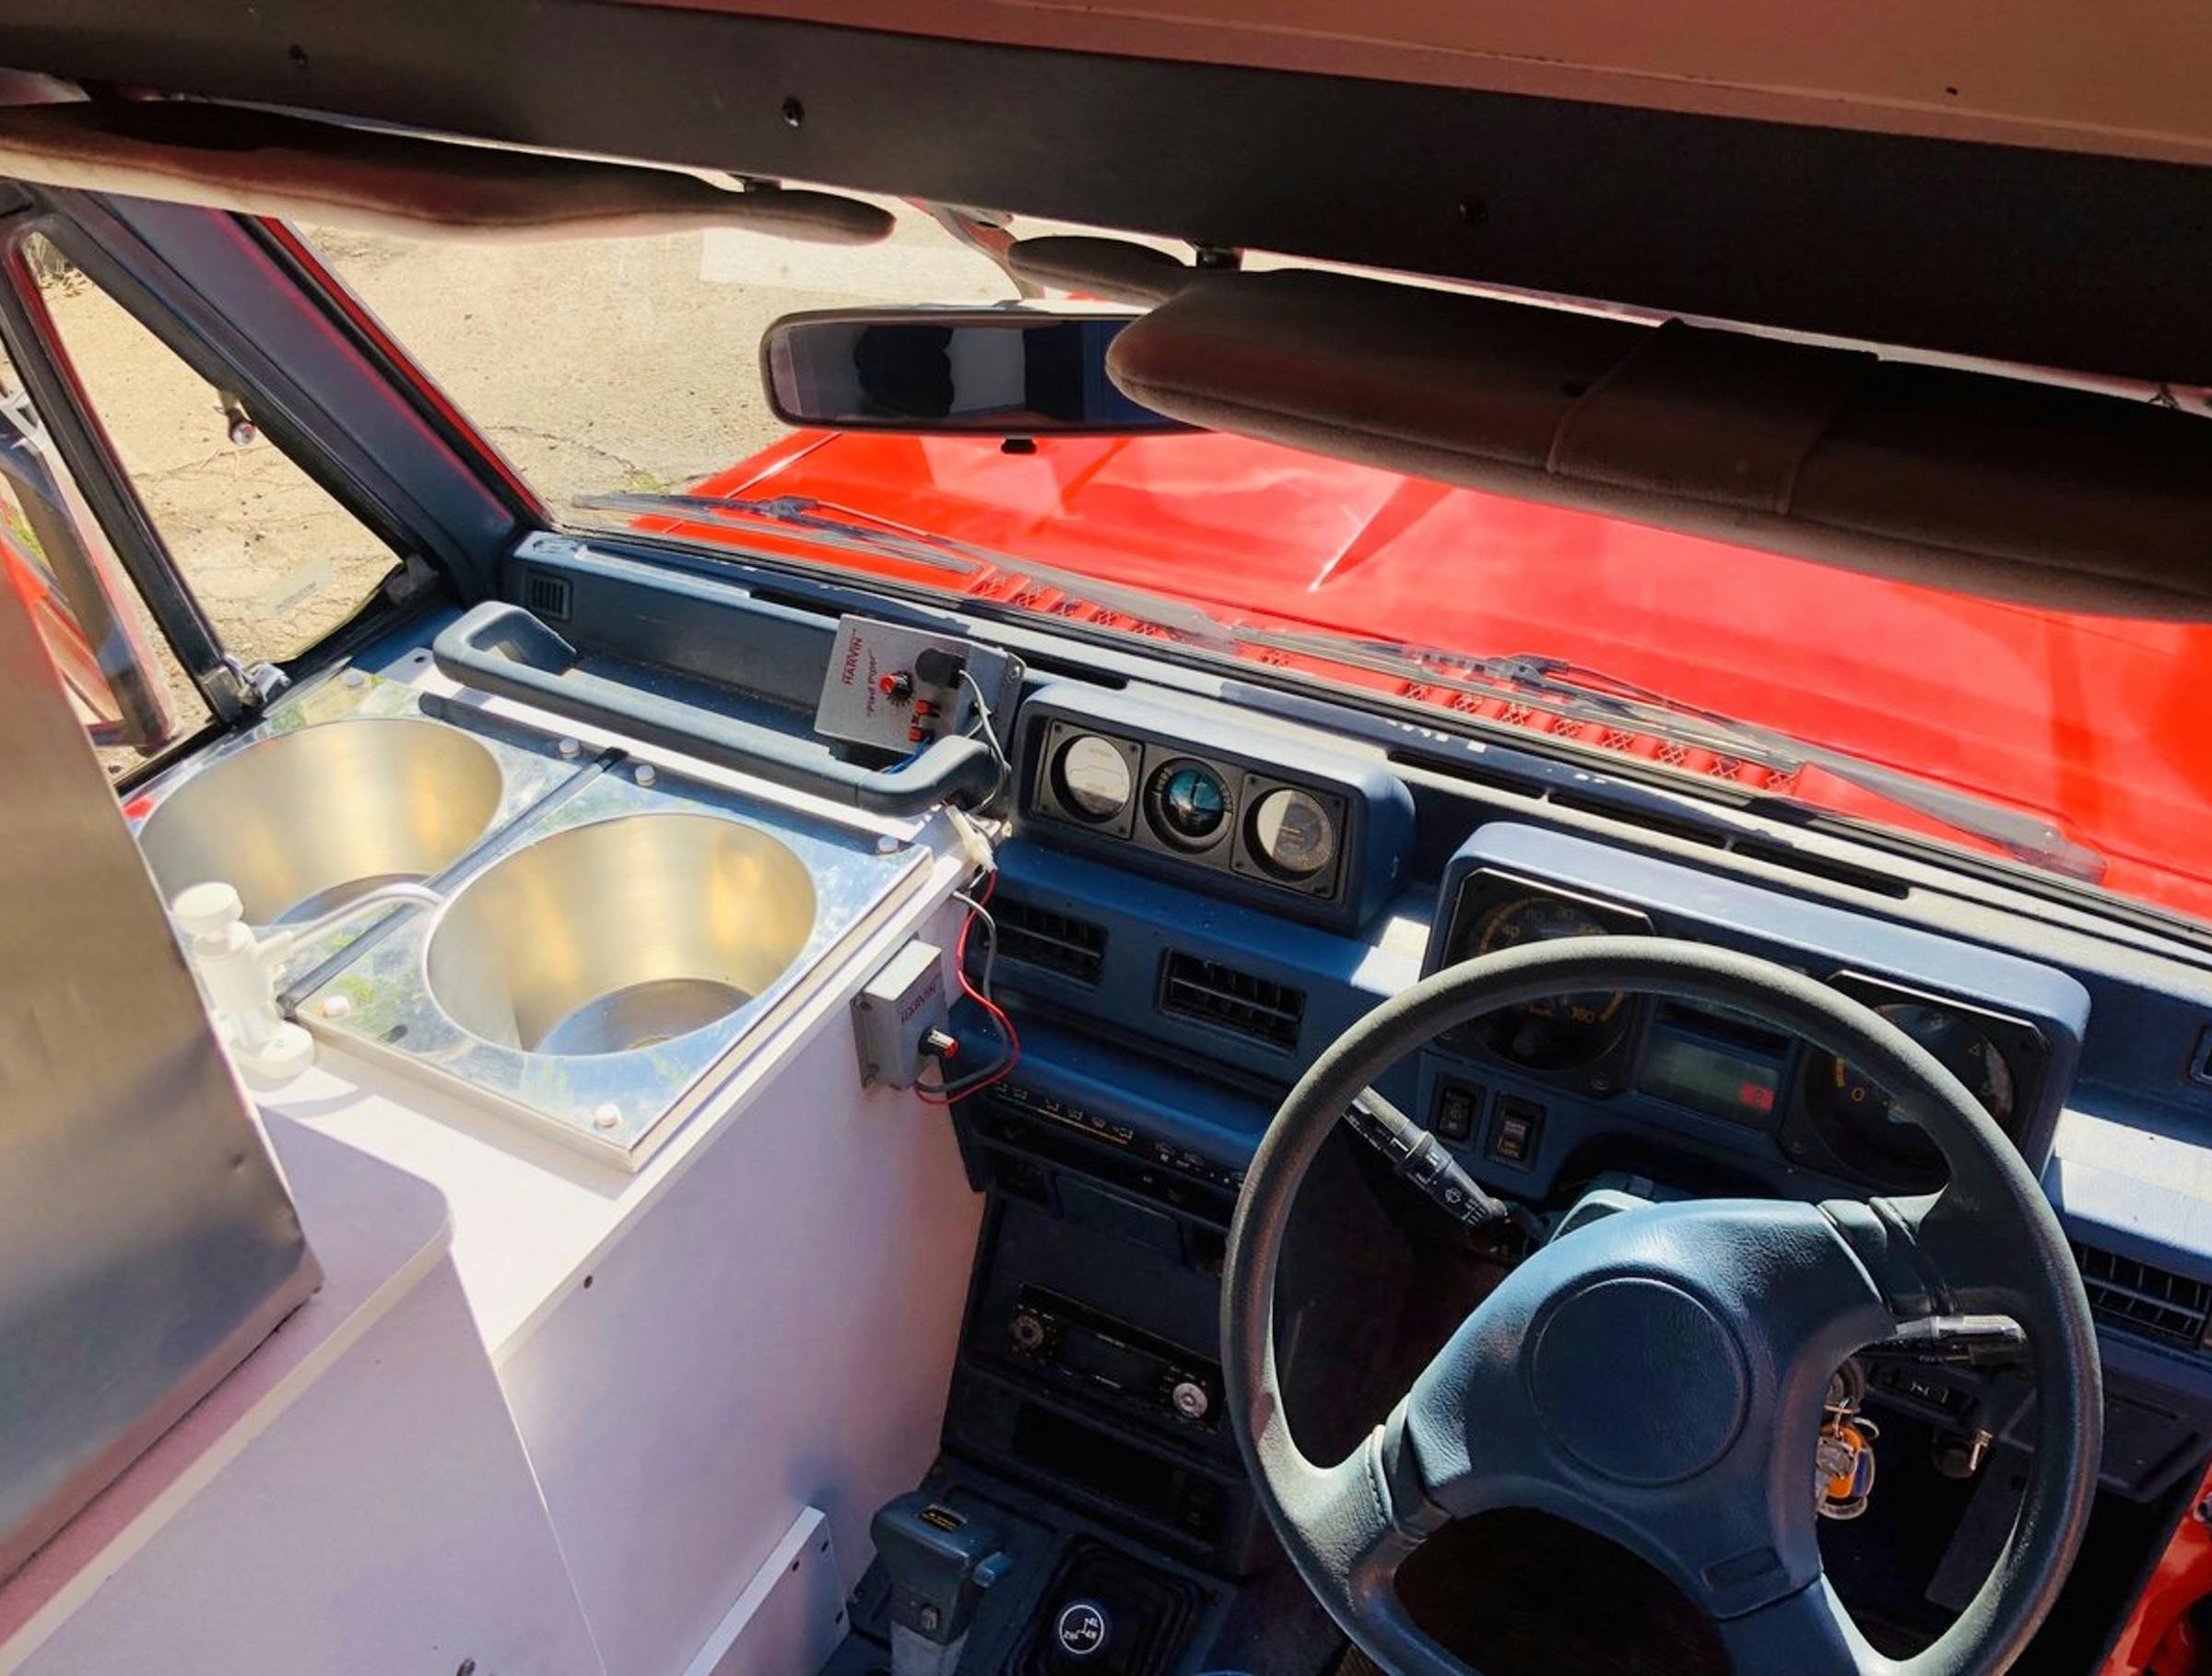 Mitsubishi Pajero ice cream van interior cockpit